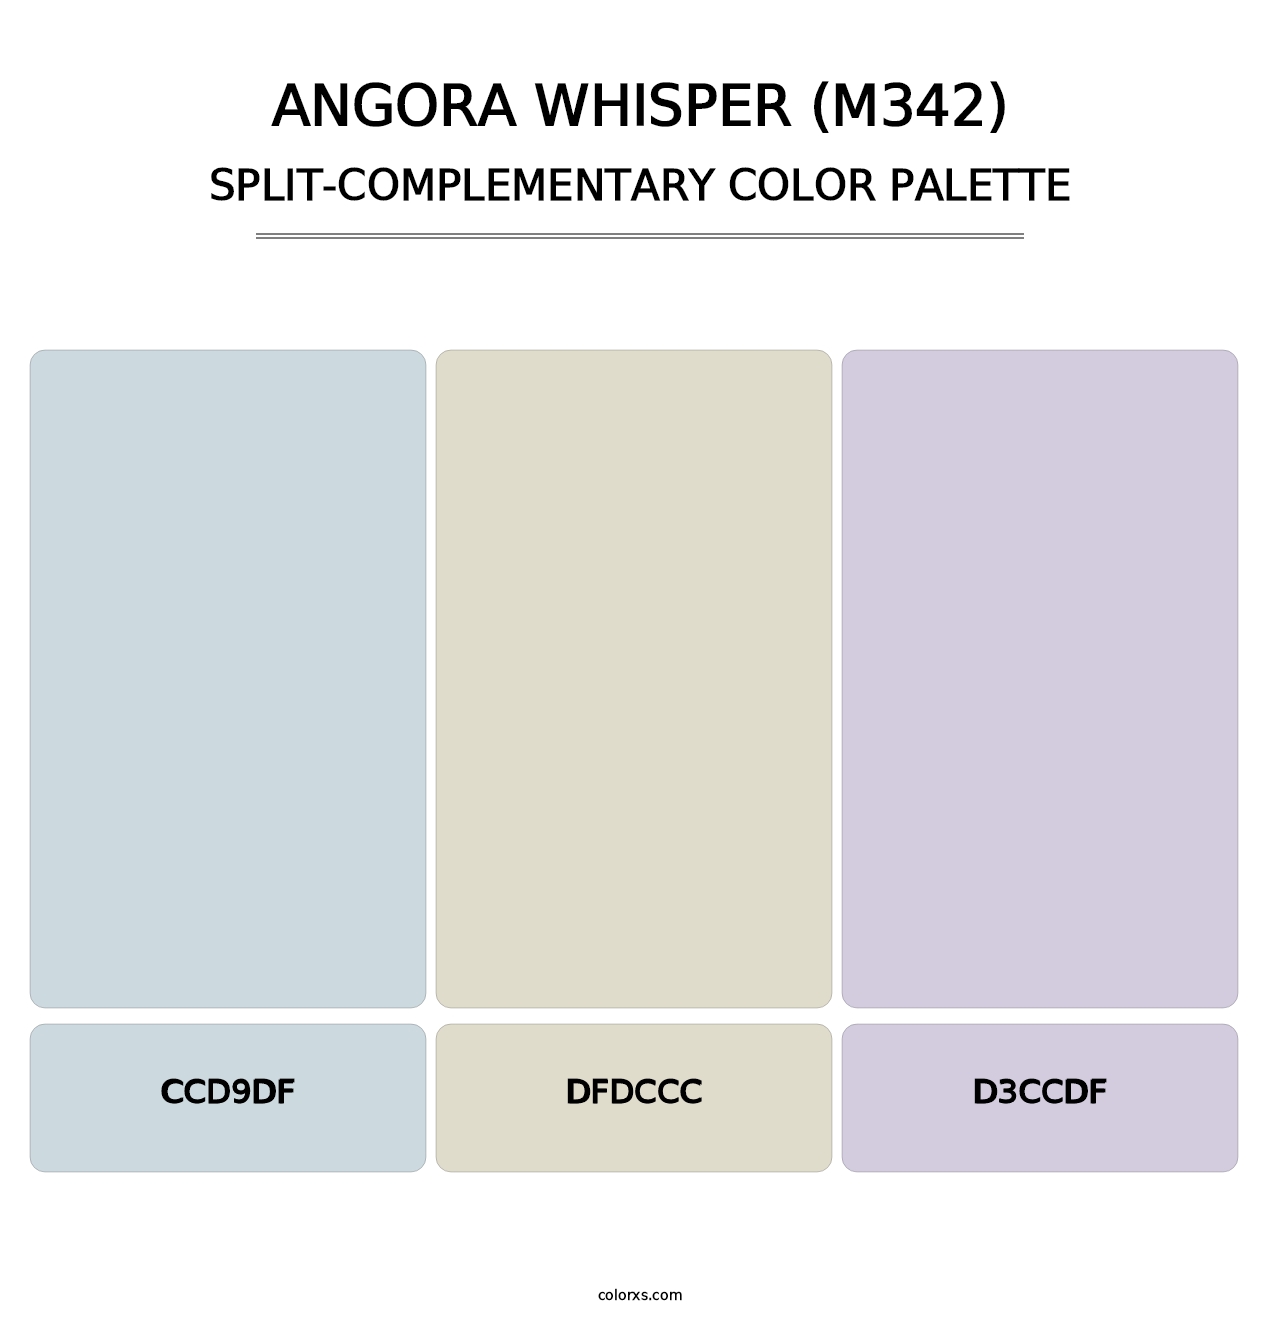 Angora Whisper (M342) - Split-Complementary Color Palette